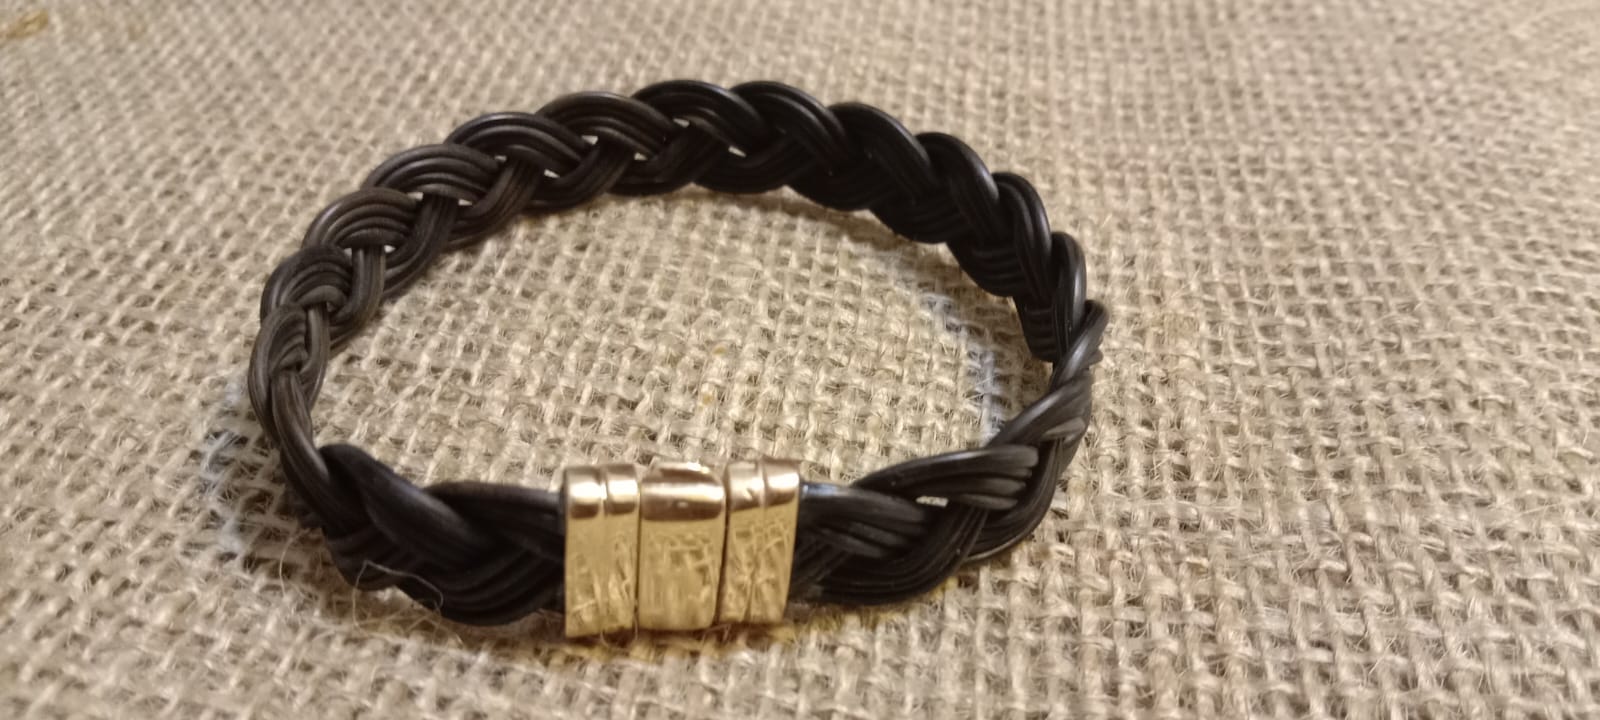 FCG Rare Dark Elephant Hair Bracelet and Gold Clasp